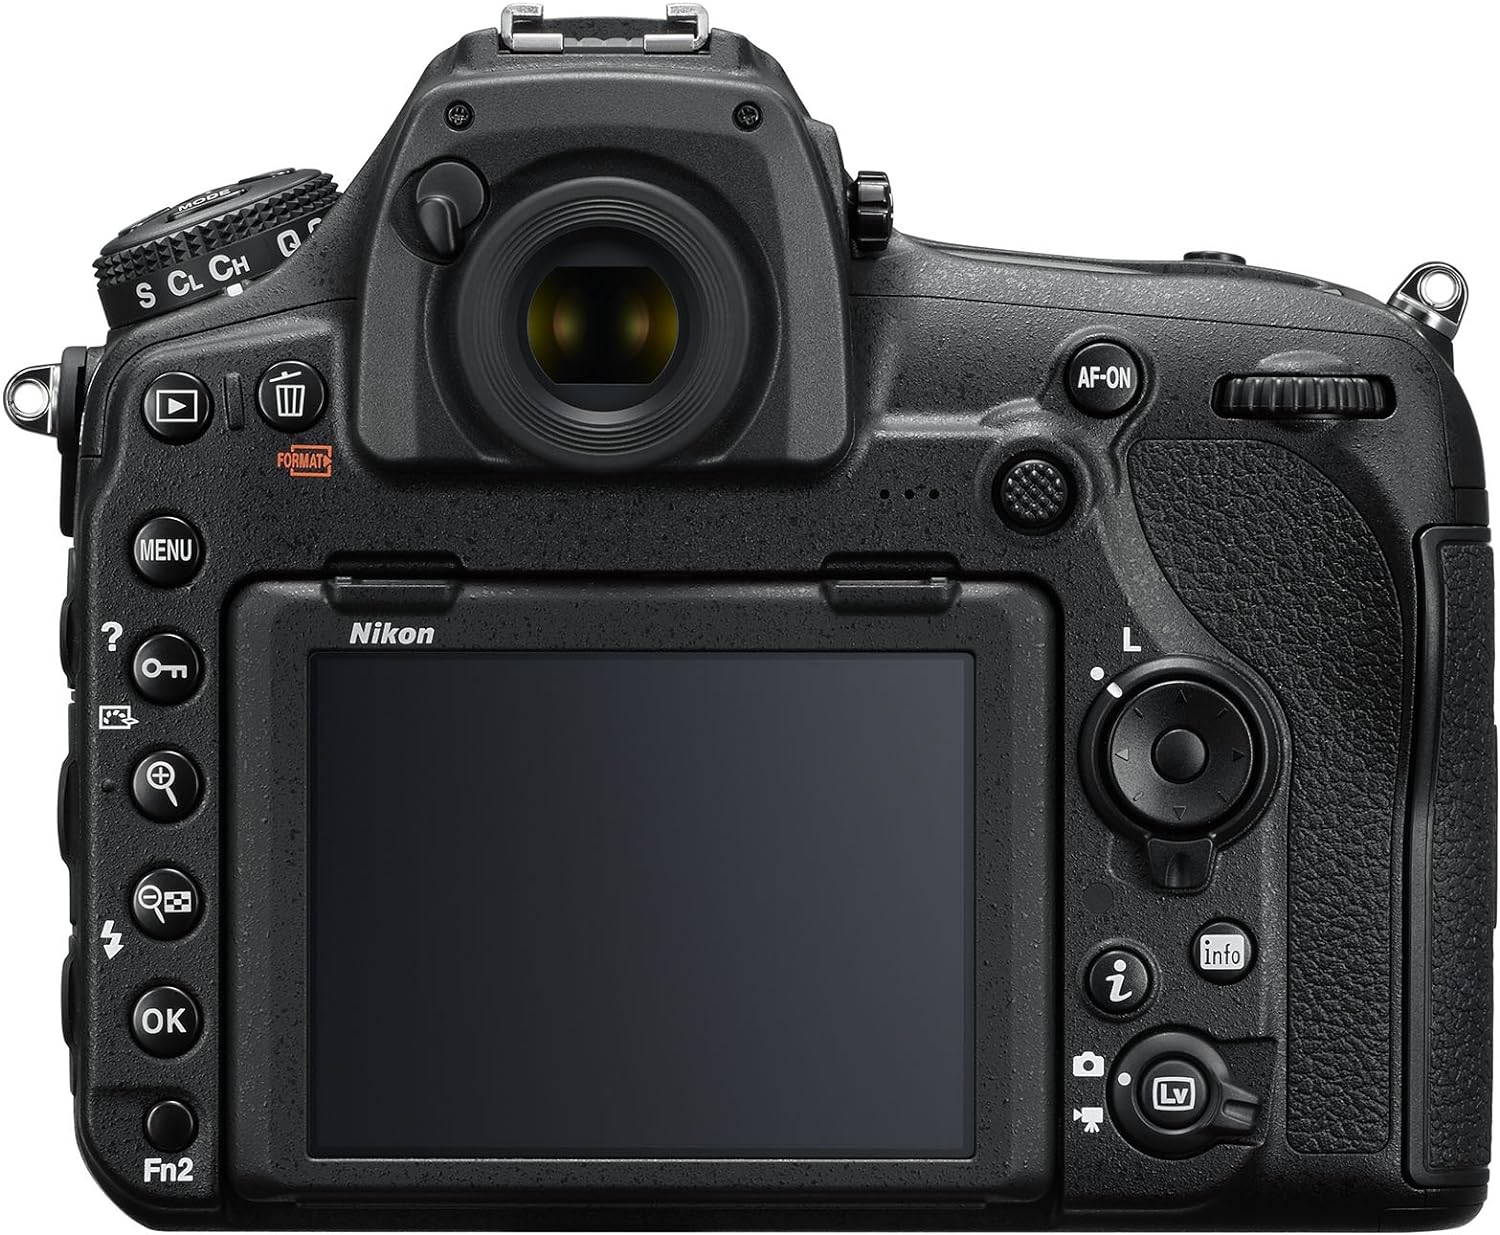 Nikon D850 FX-format Digital SLR Camera Body w/ AF-S NIKKOR 24-120MM F/4G ED VR Lens: A Detailed Review